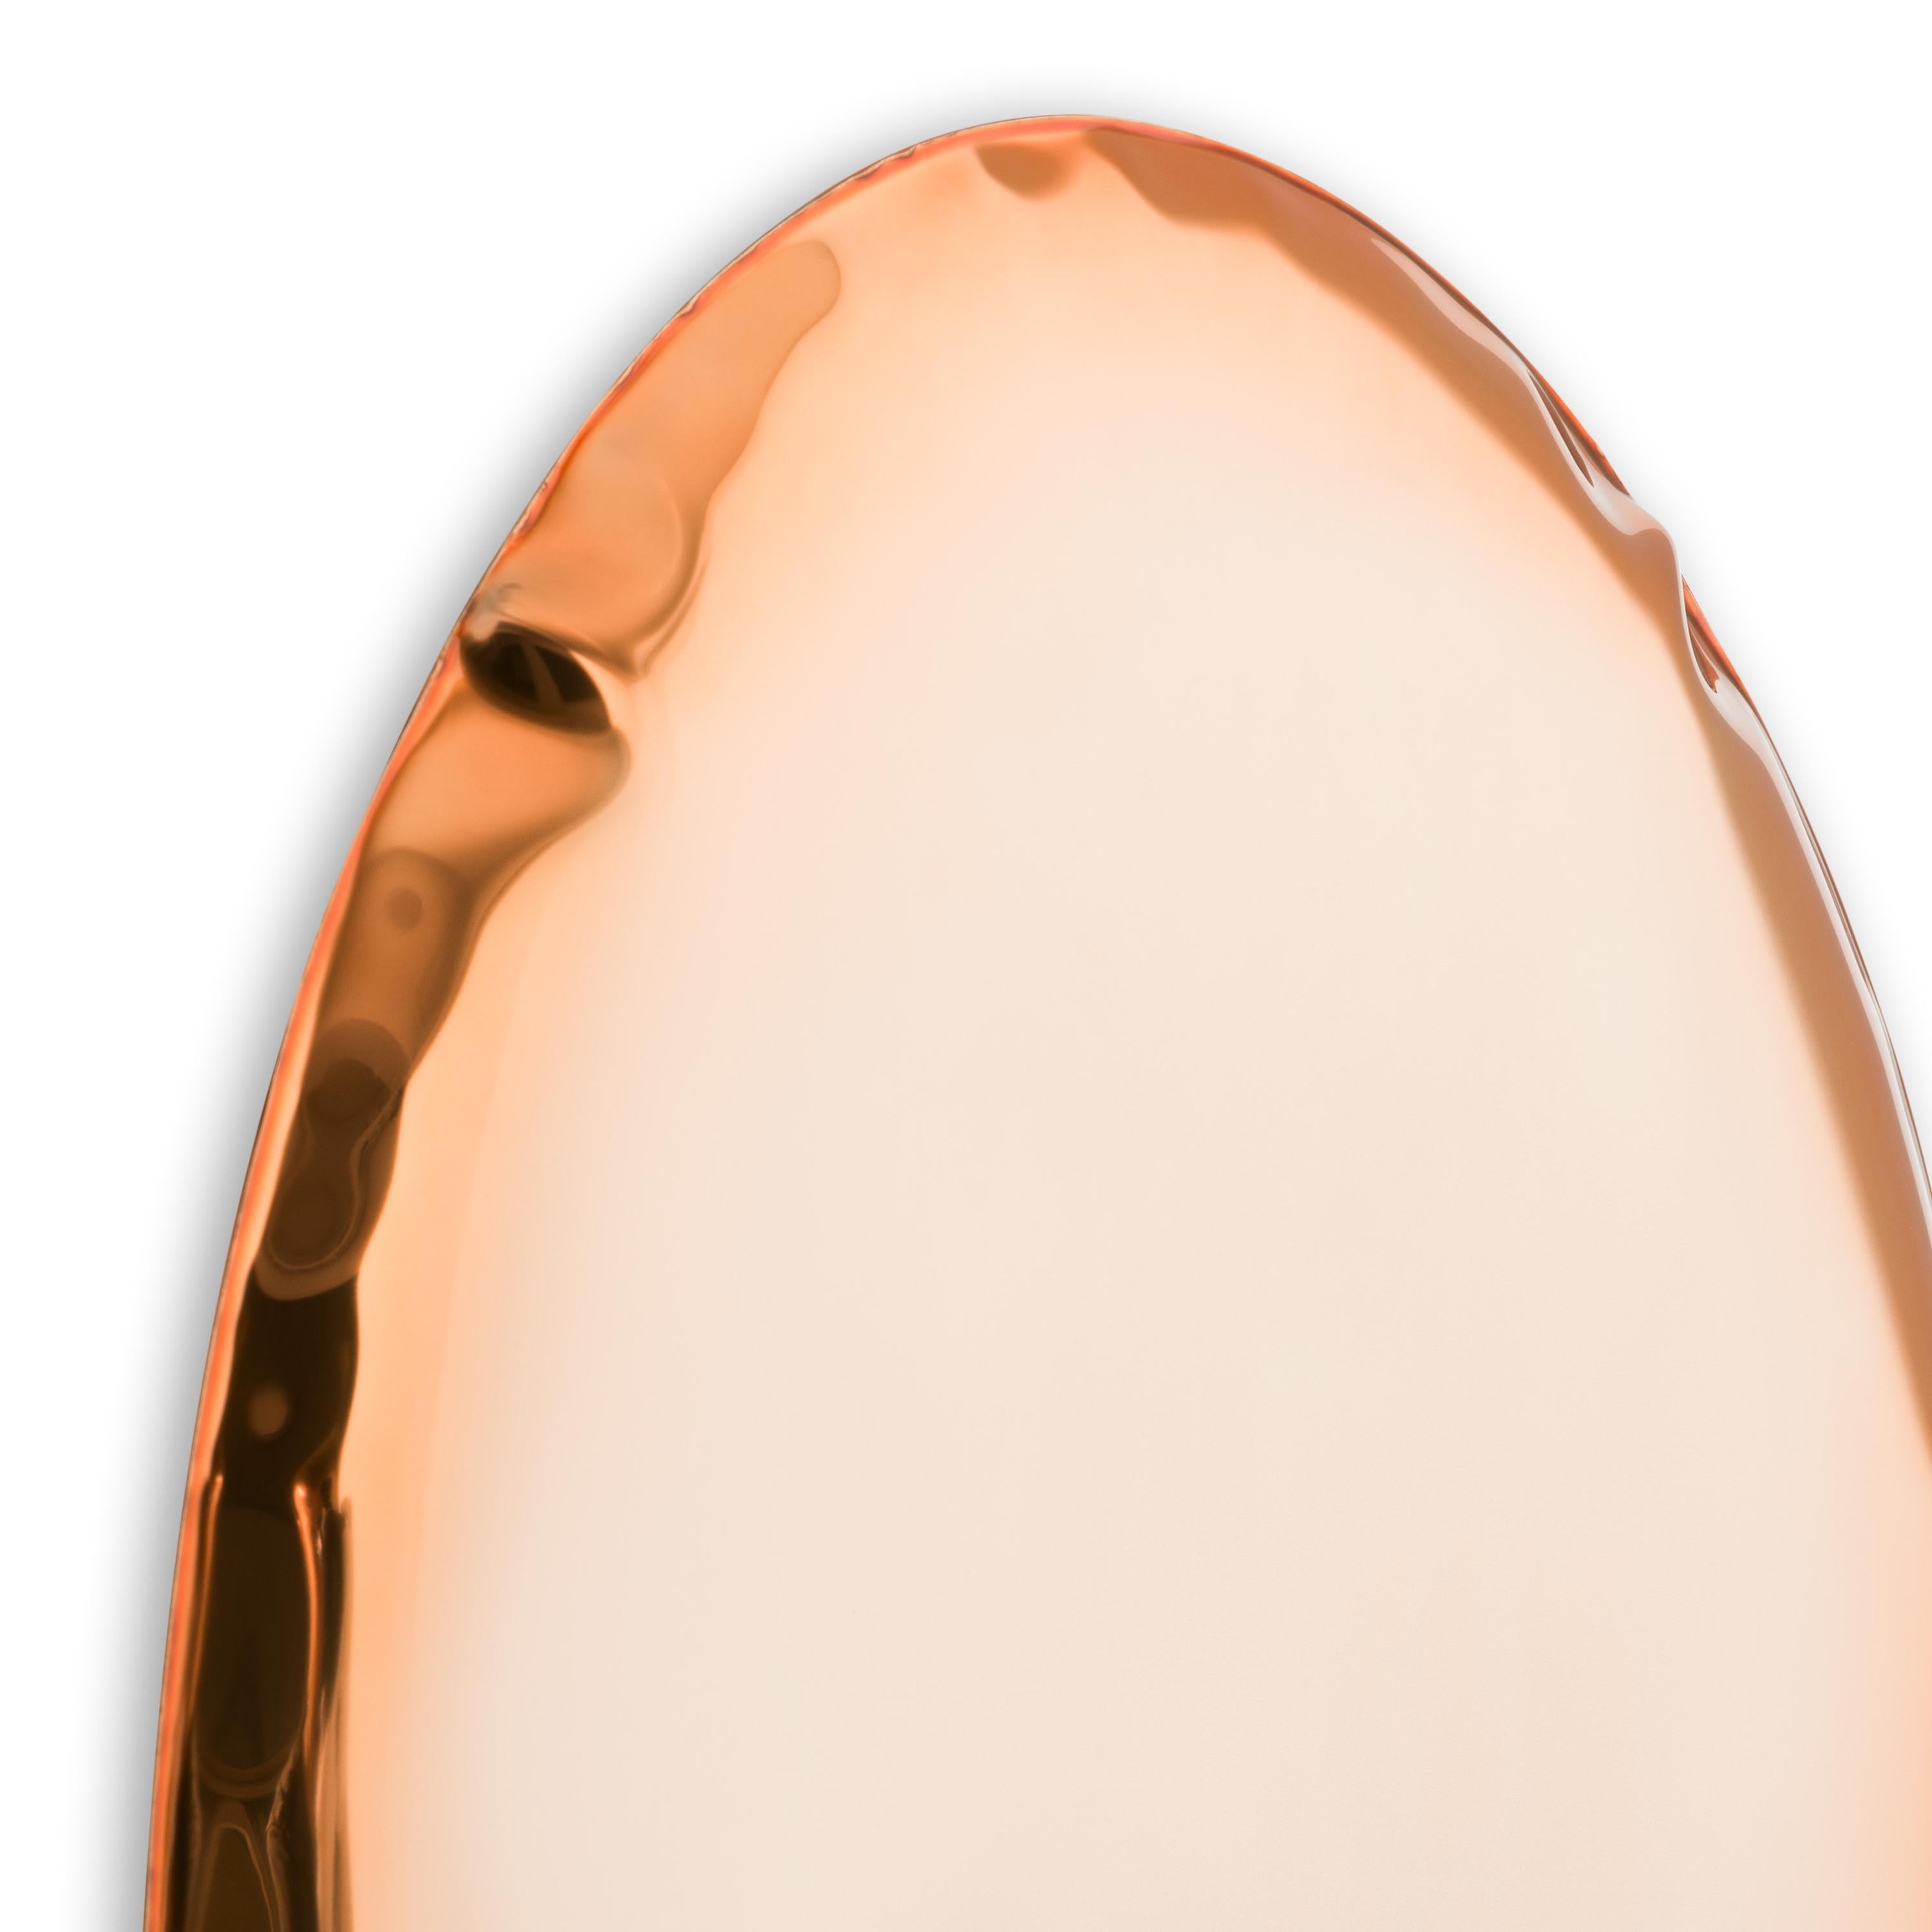 La série TAFLA O se caractérise par des formes lisses et optiquement légères inspirées des gouttelettes de liquide. Grâce à sa forme unique, elle associe le monde du design, de l'art et de la technologie. La collection TAFLA est une étape radicale